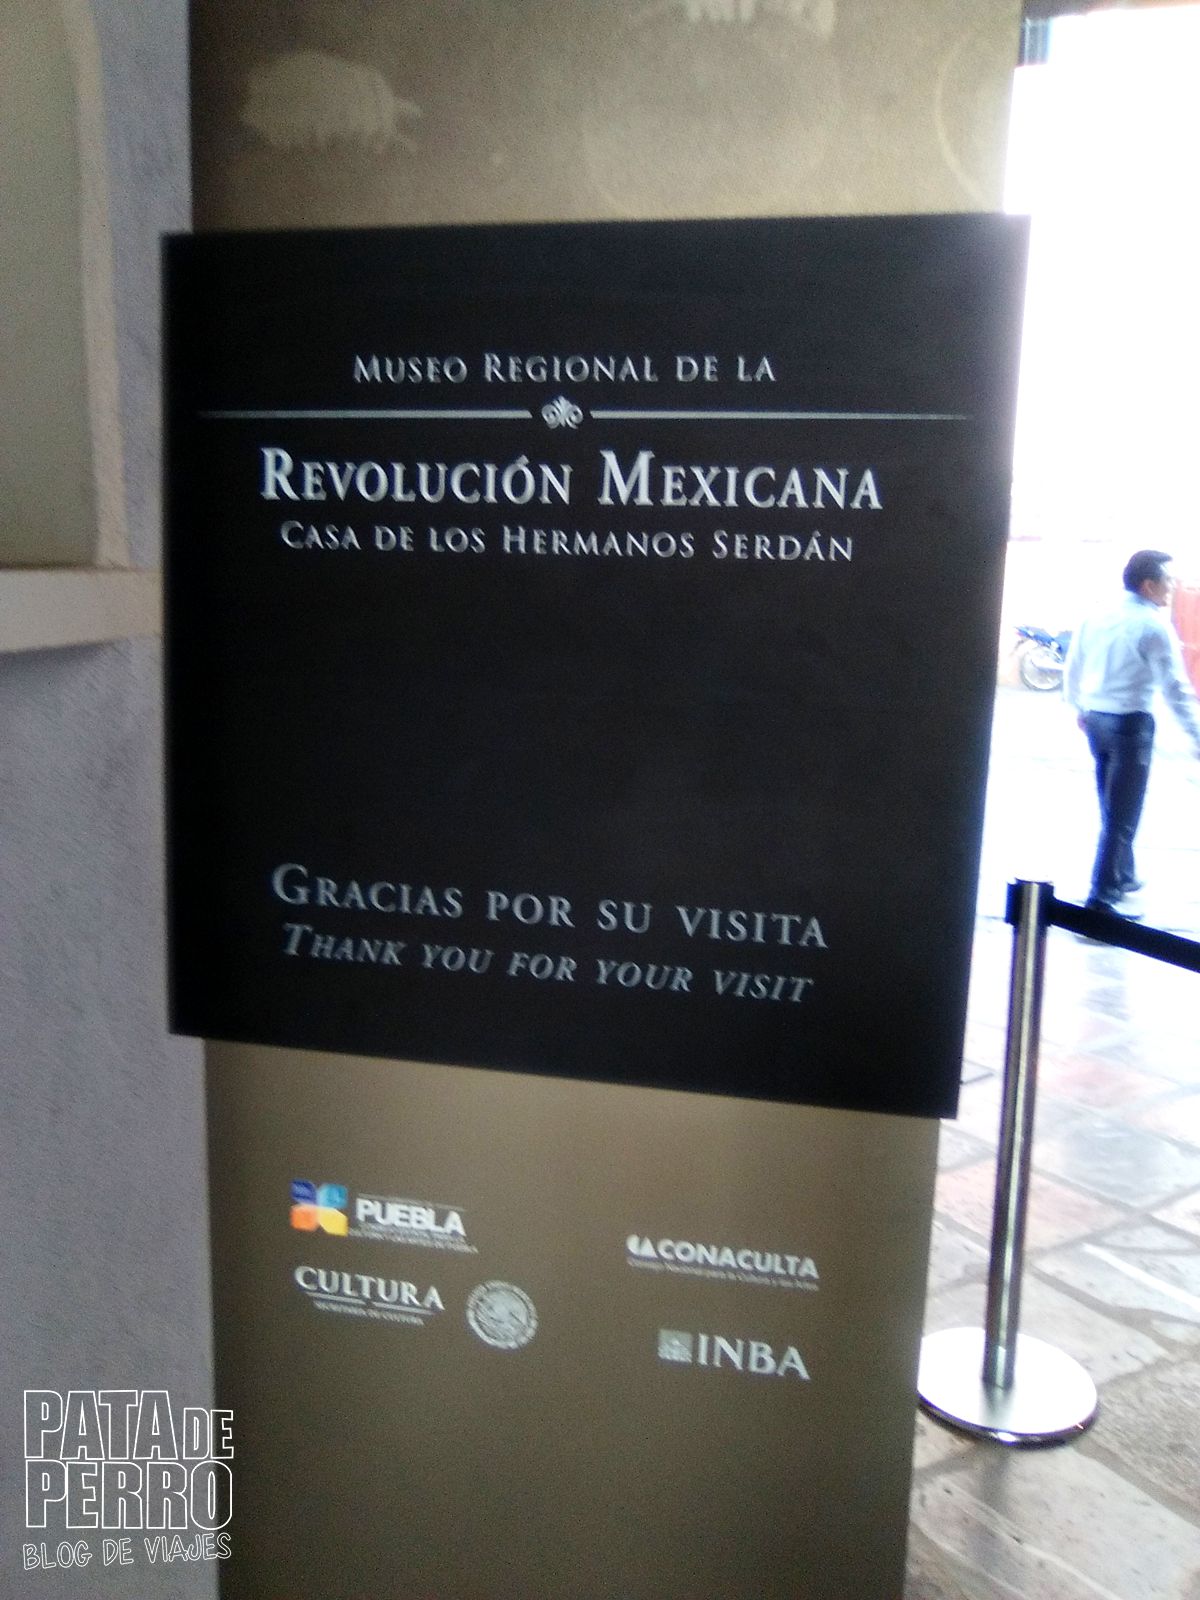 museo-regional-de-la-revolucion-mexicana-casa-de-los-hermanos-serdan-pata-de-perro-blog-de-viajes32